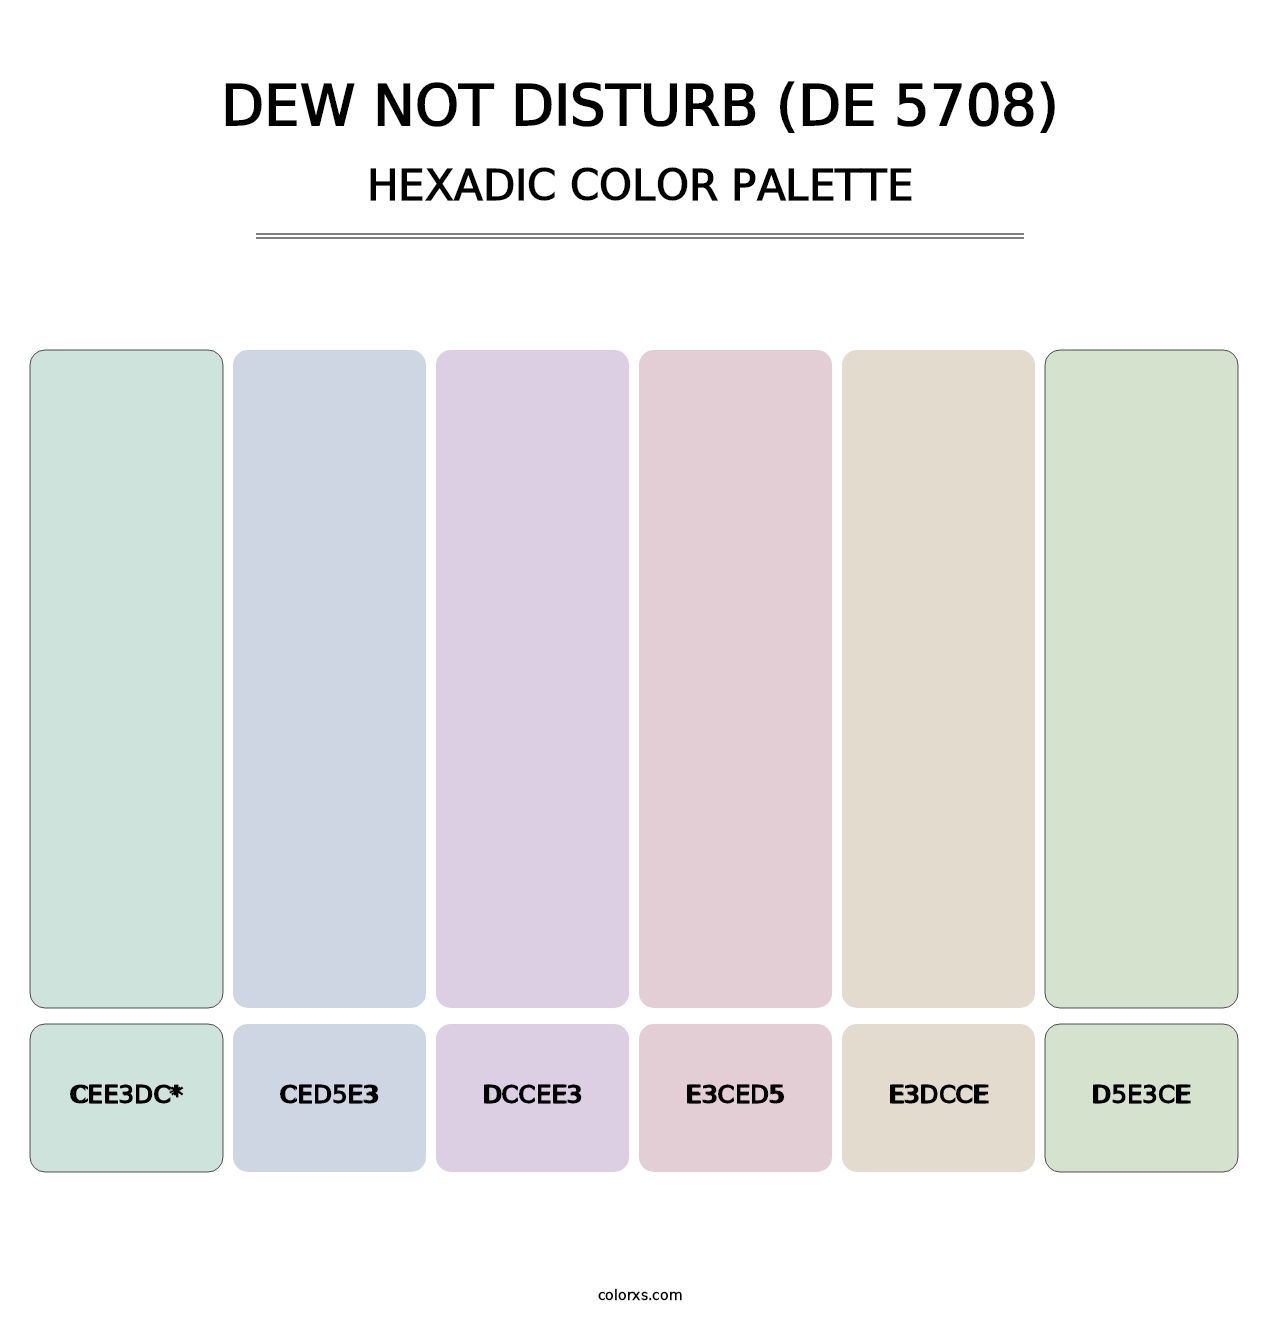 Dew Not Disturb (DE 5708) - Hexadic Color Palette